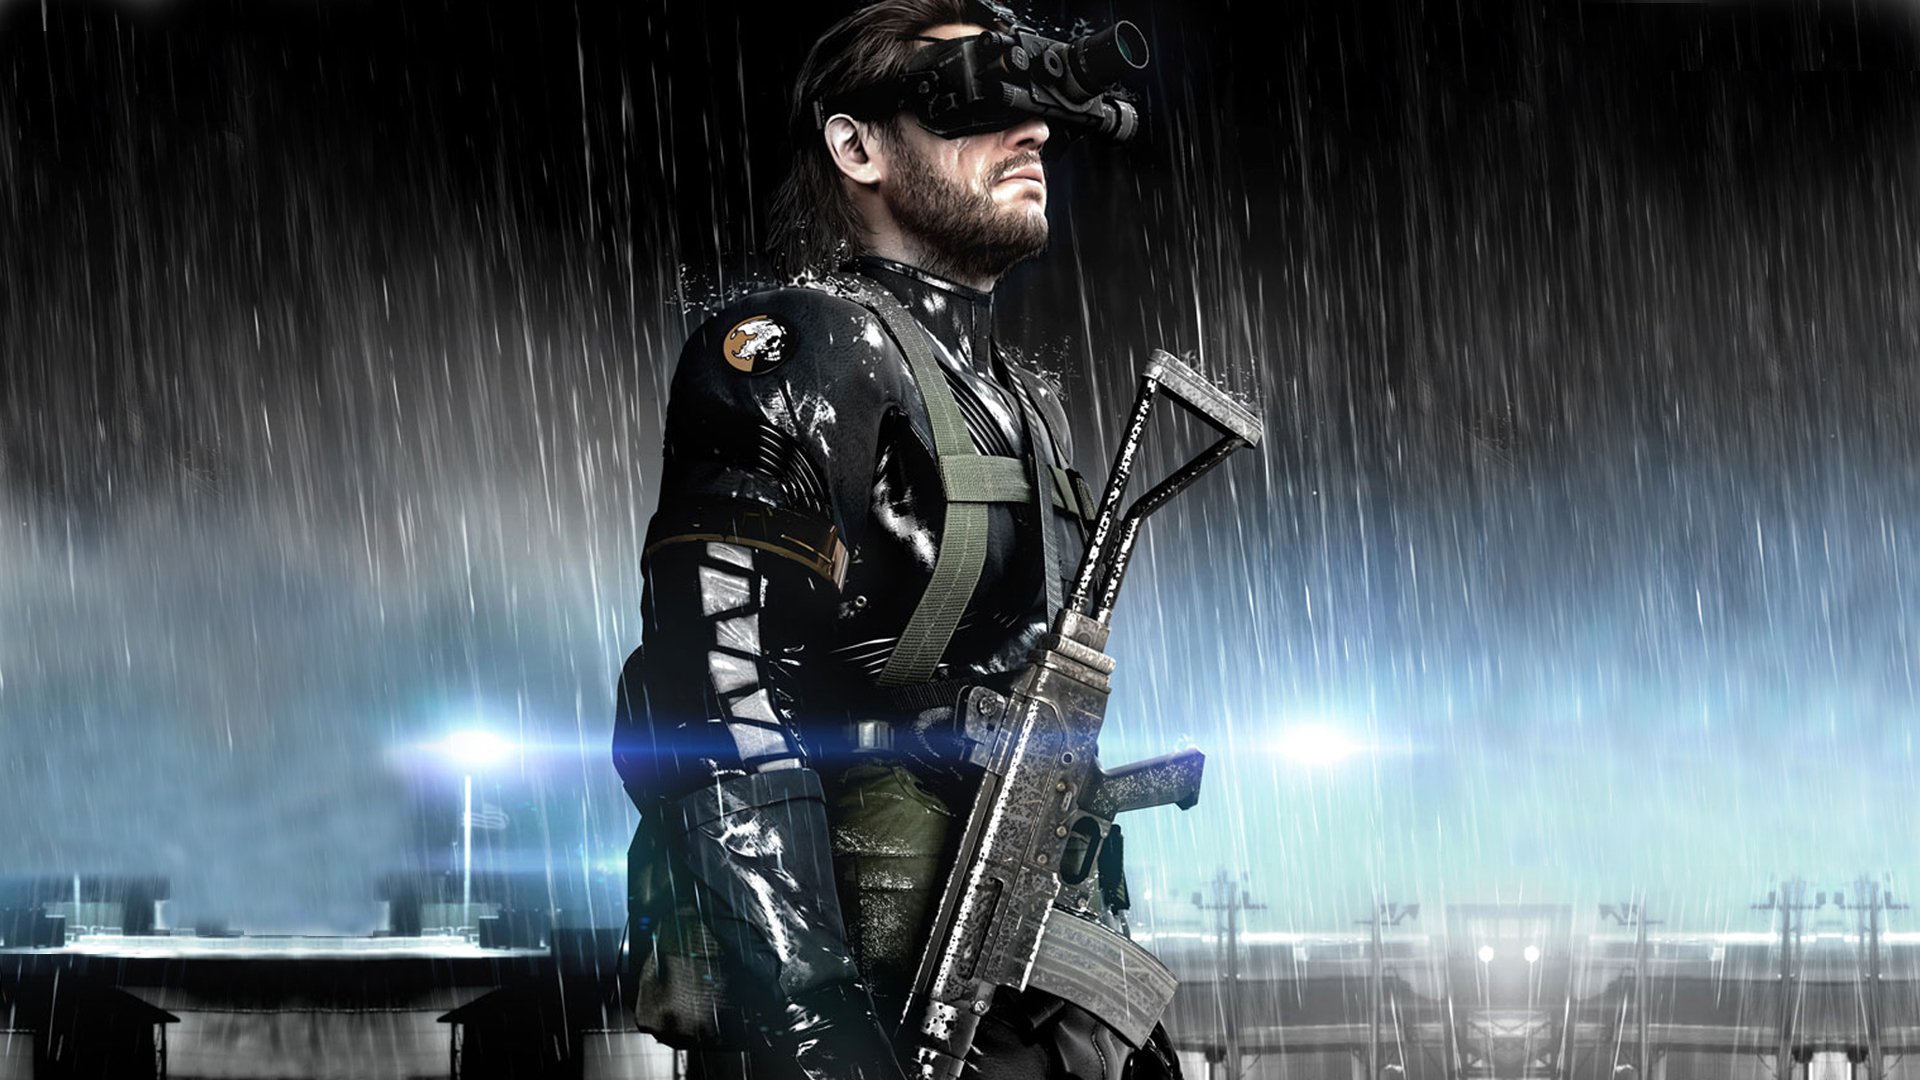 Скачать обои Metal Gear Solid V: Ground Zeroes на телефон бесплатно